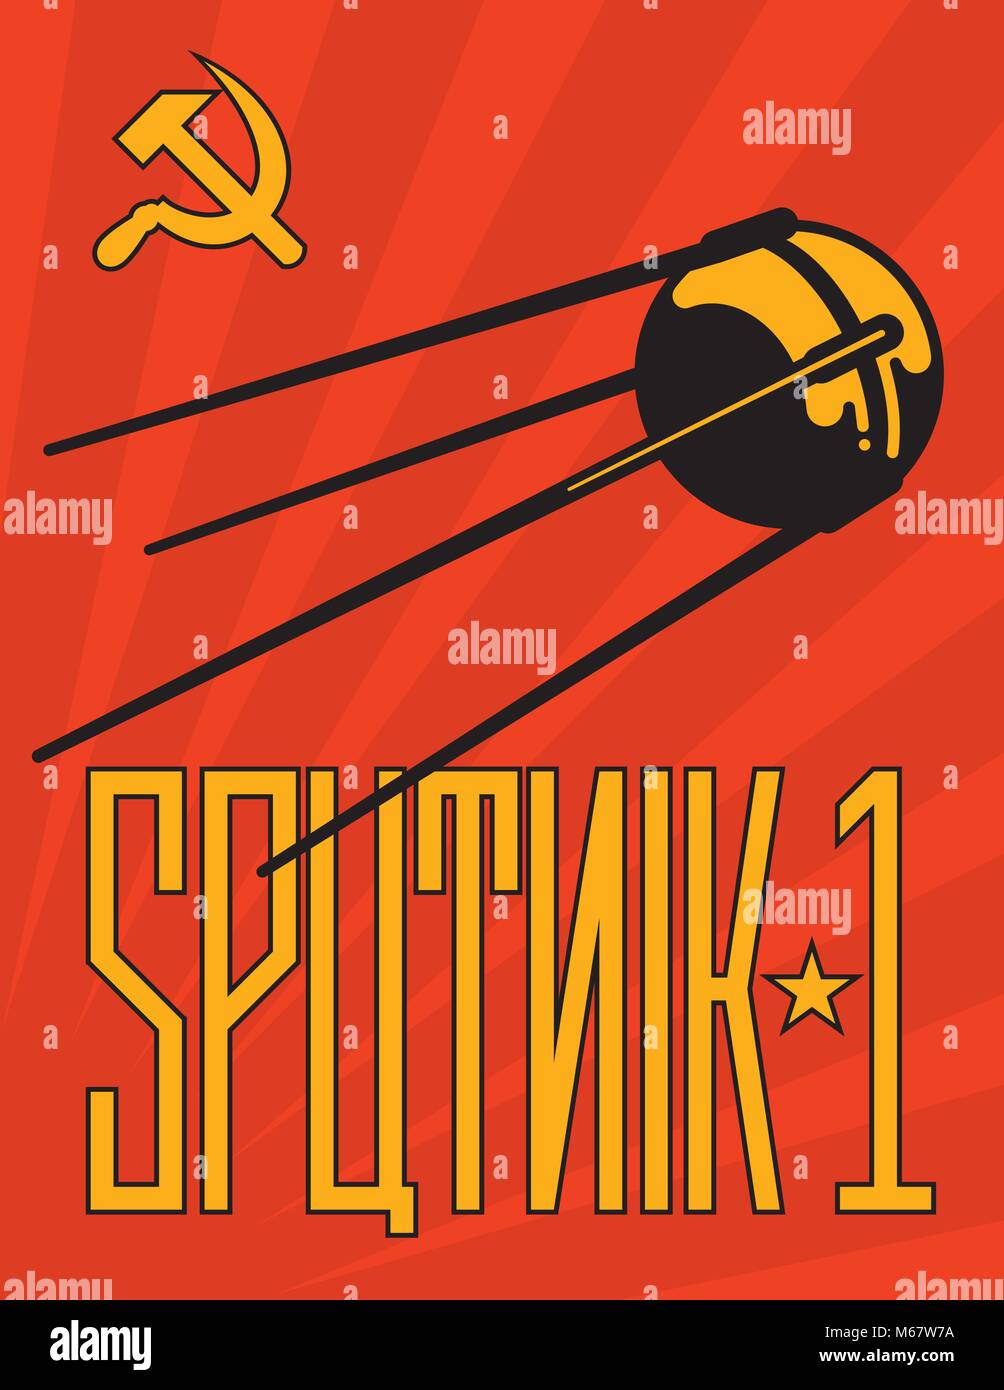 Retro Sputnik Satelliten-Vektor Design. Vintage Style russische Sputnik 1 Propaganda stil Plakatgestaltung mit kyrillischen Alphabet stil Schriftzug. Stock Vektor